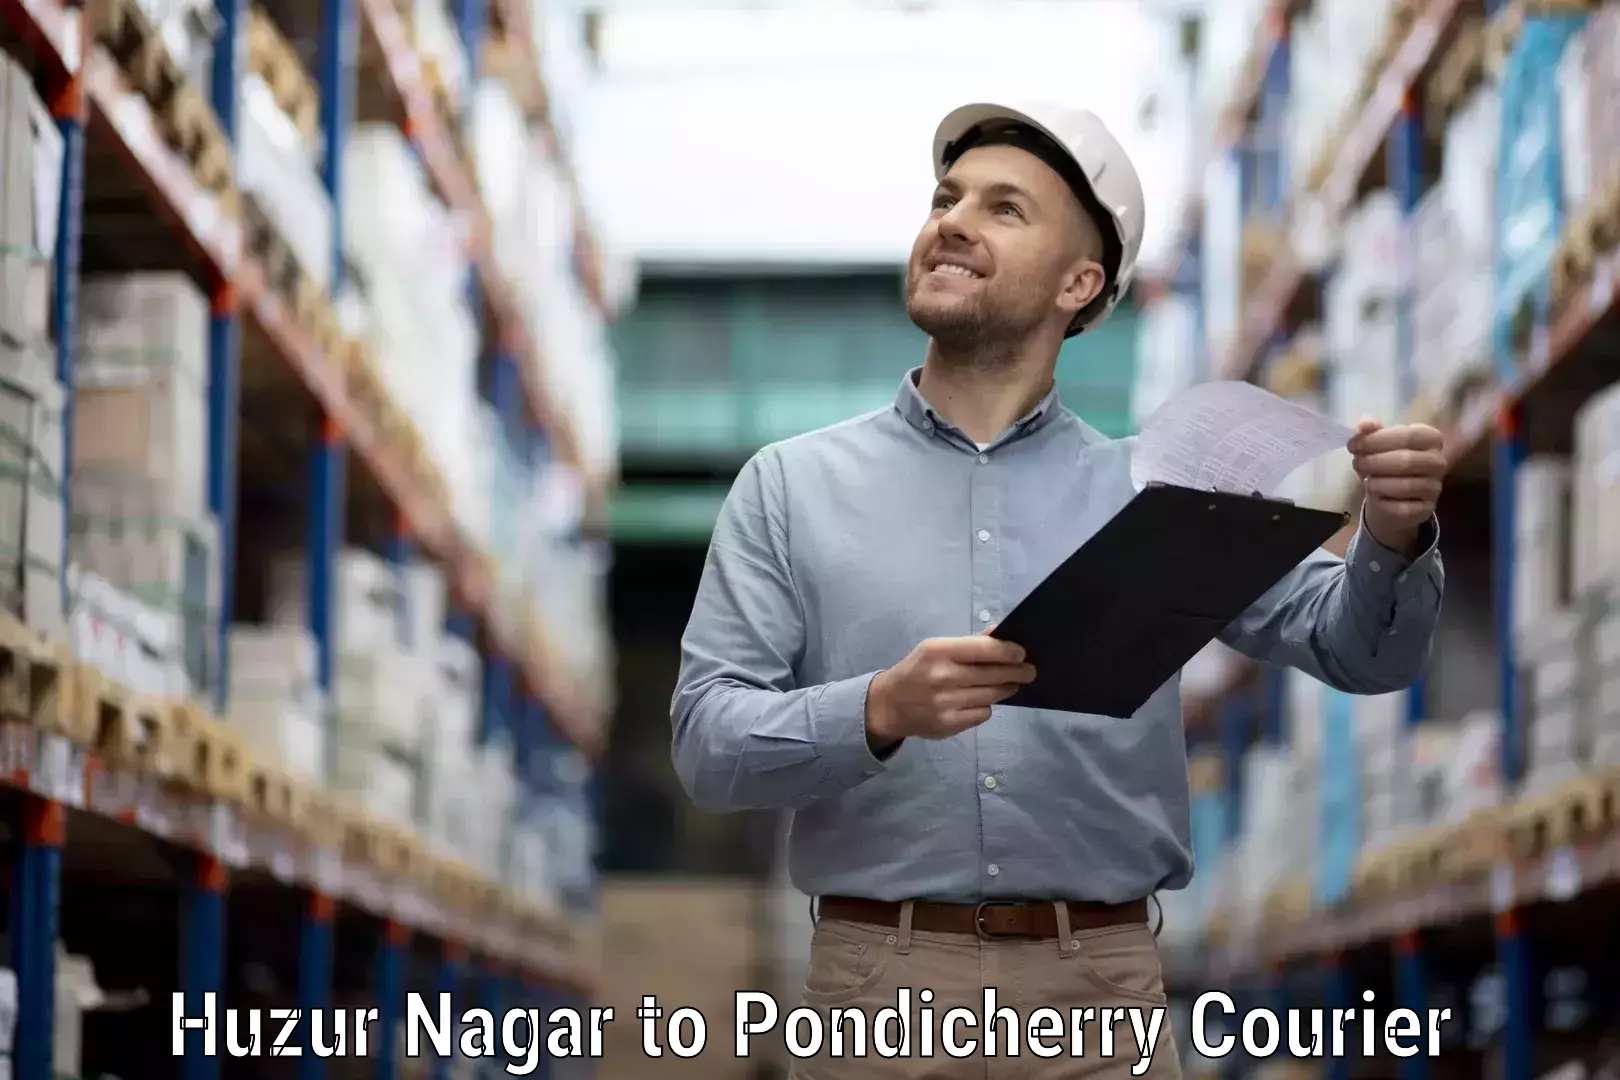 Courier app Huzur Nagar to Pondicherry University